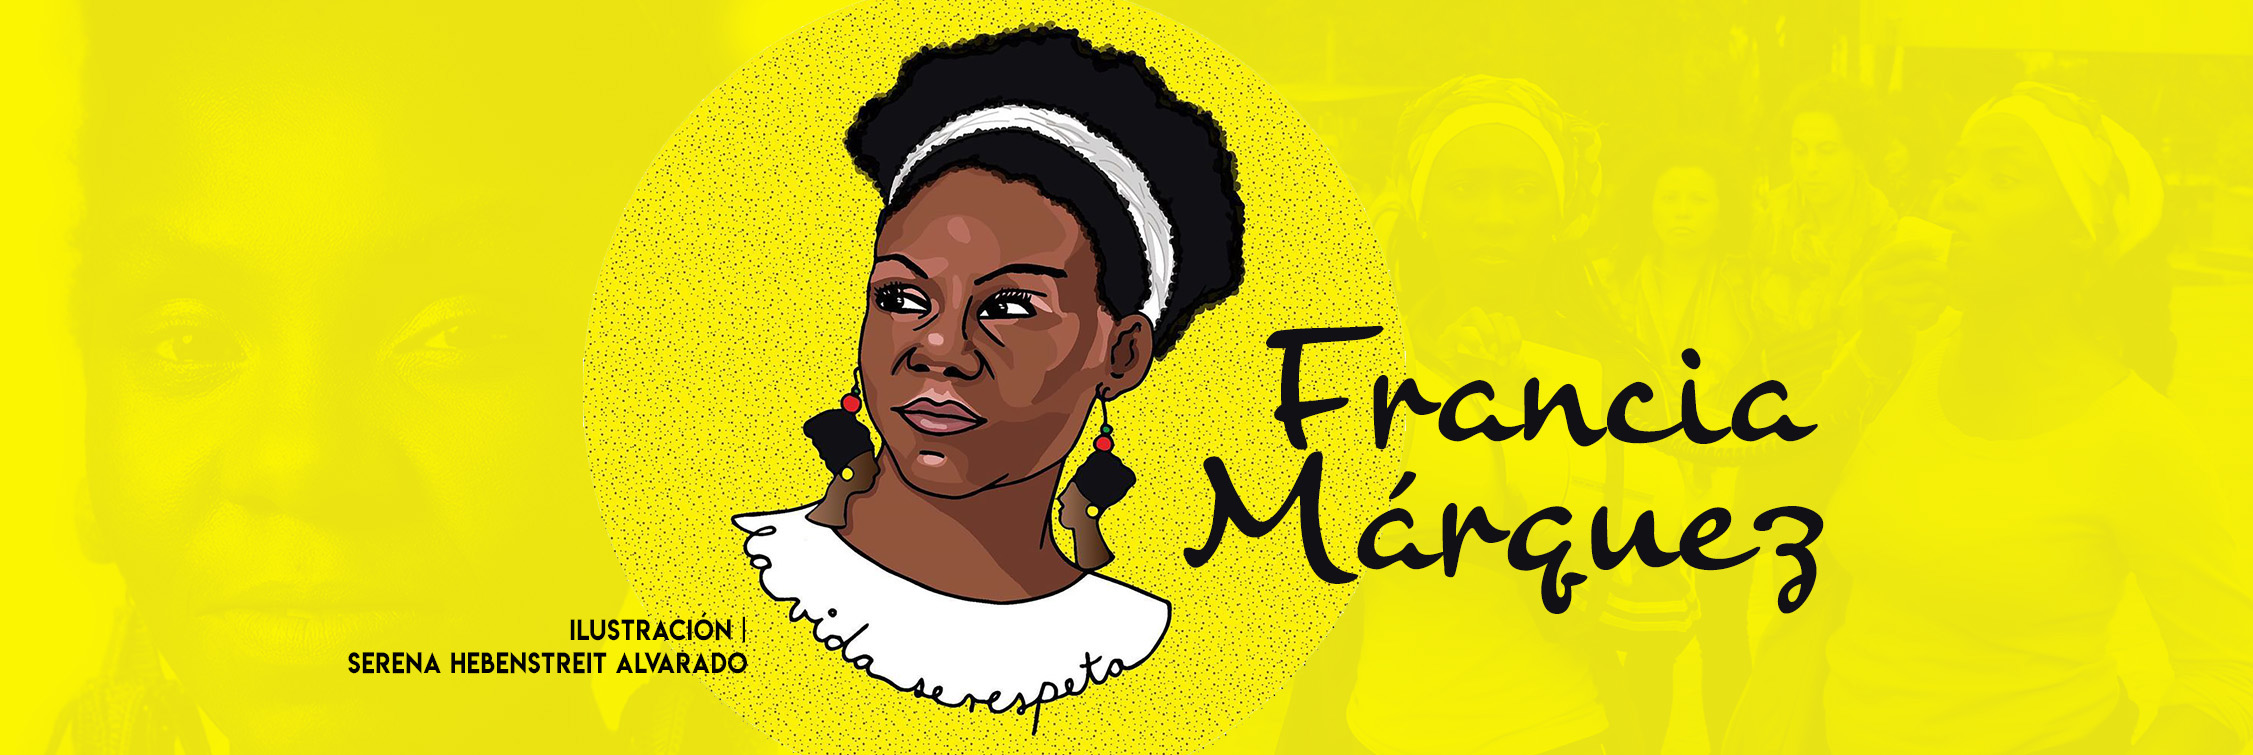 Francia Márquez, la afrocolombiana más influyente del mundo